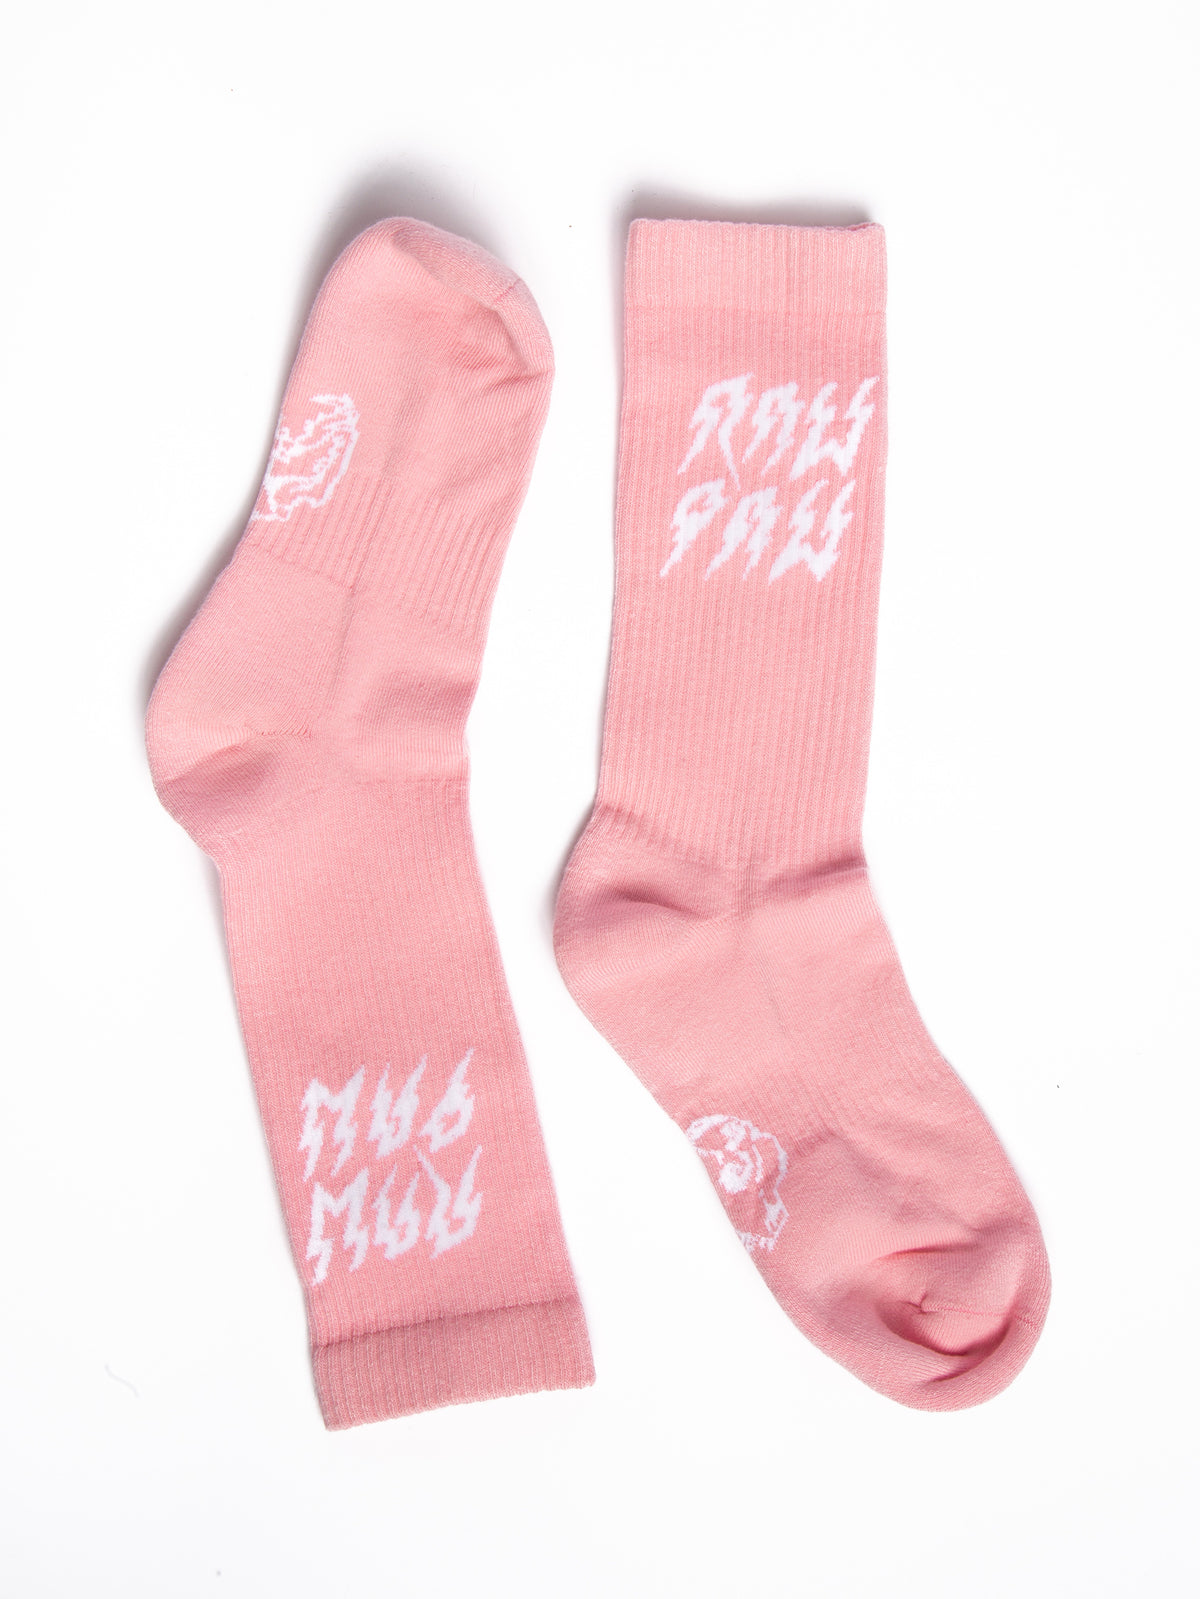 Raw Paw Pink Socks